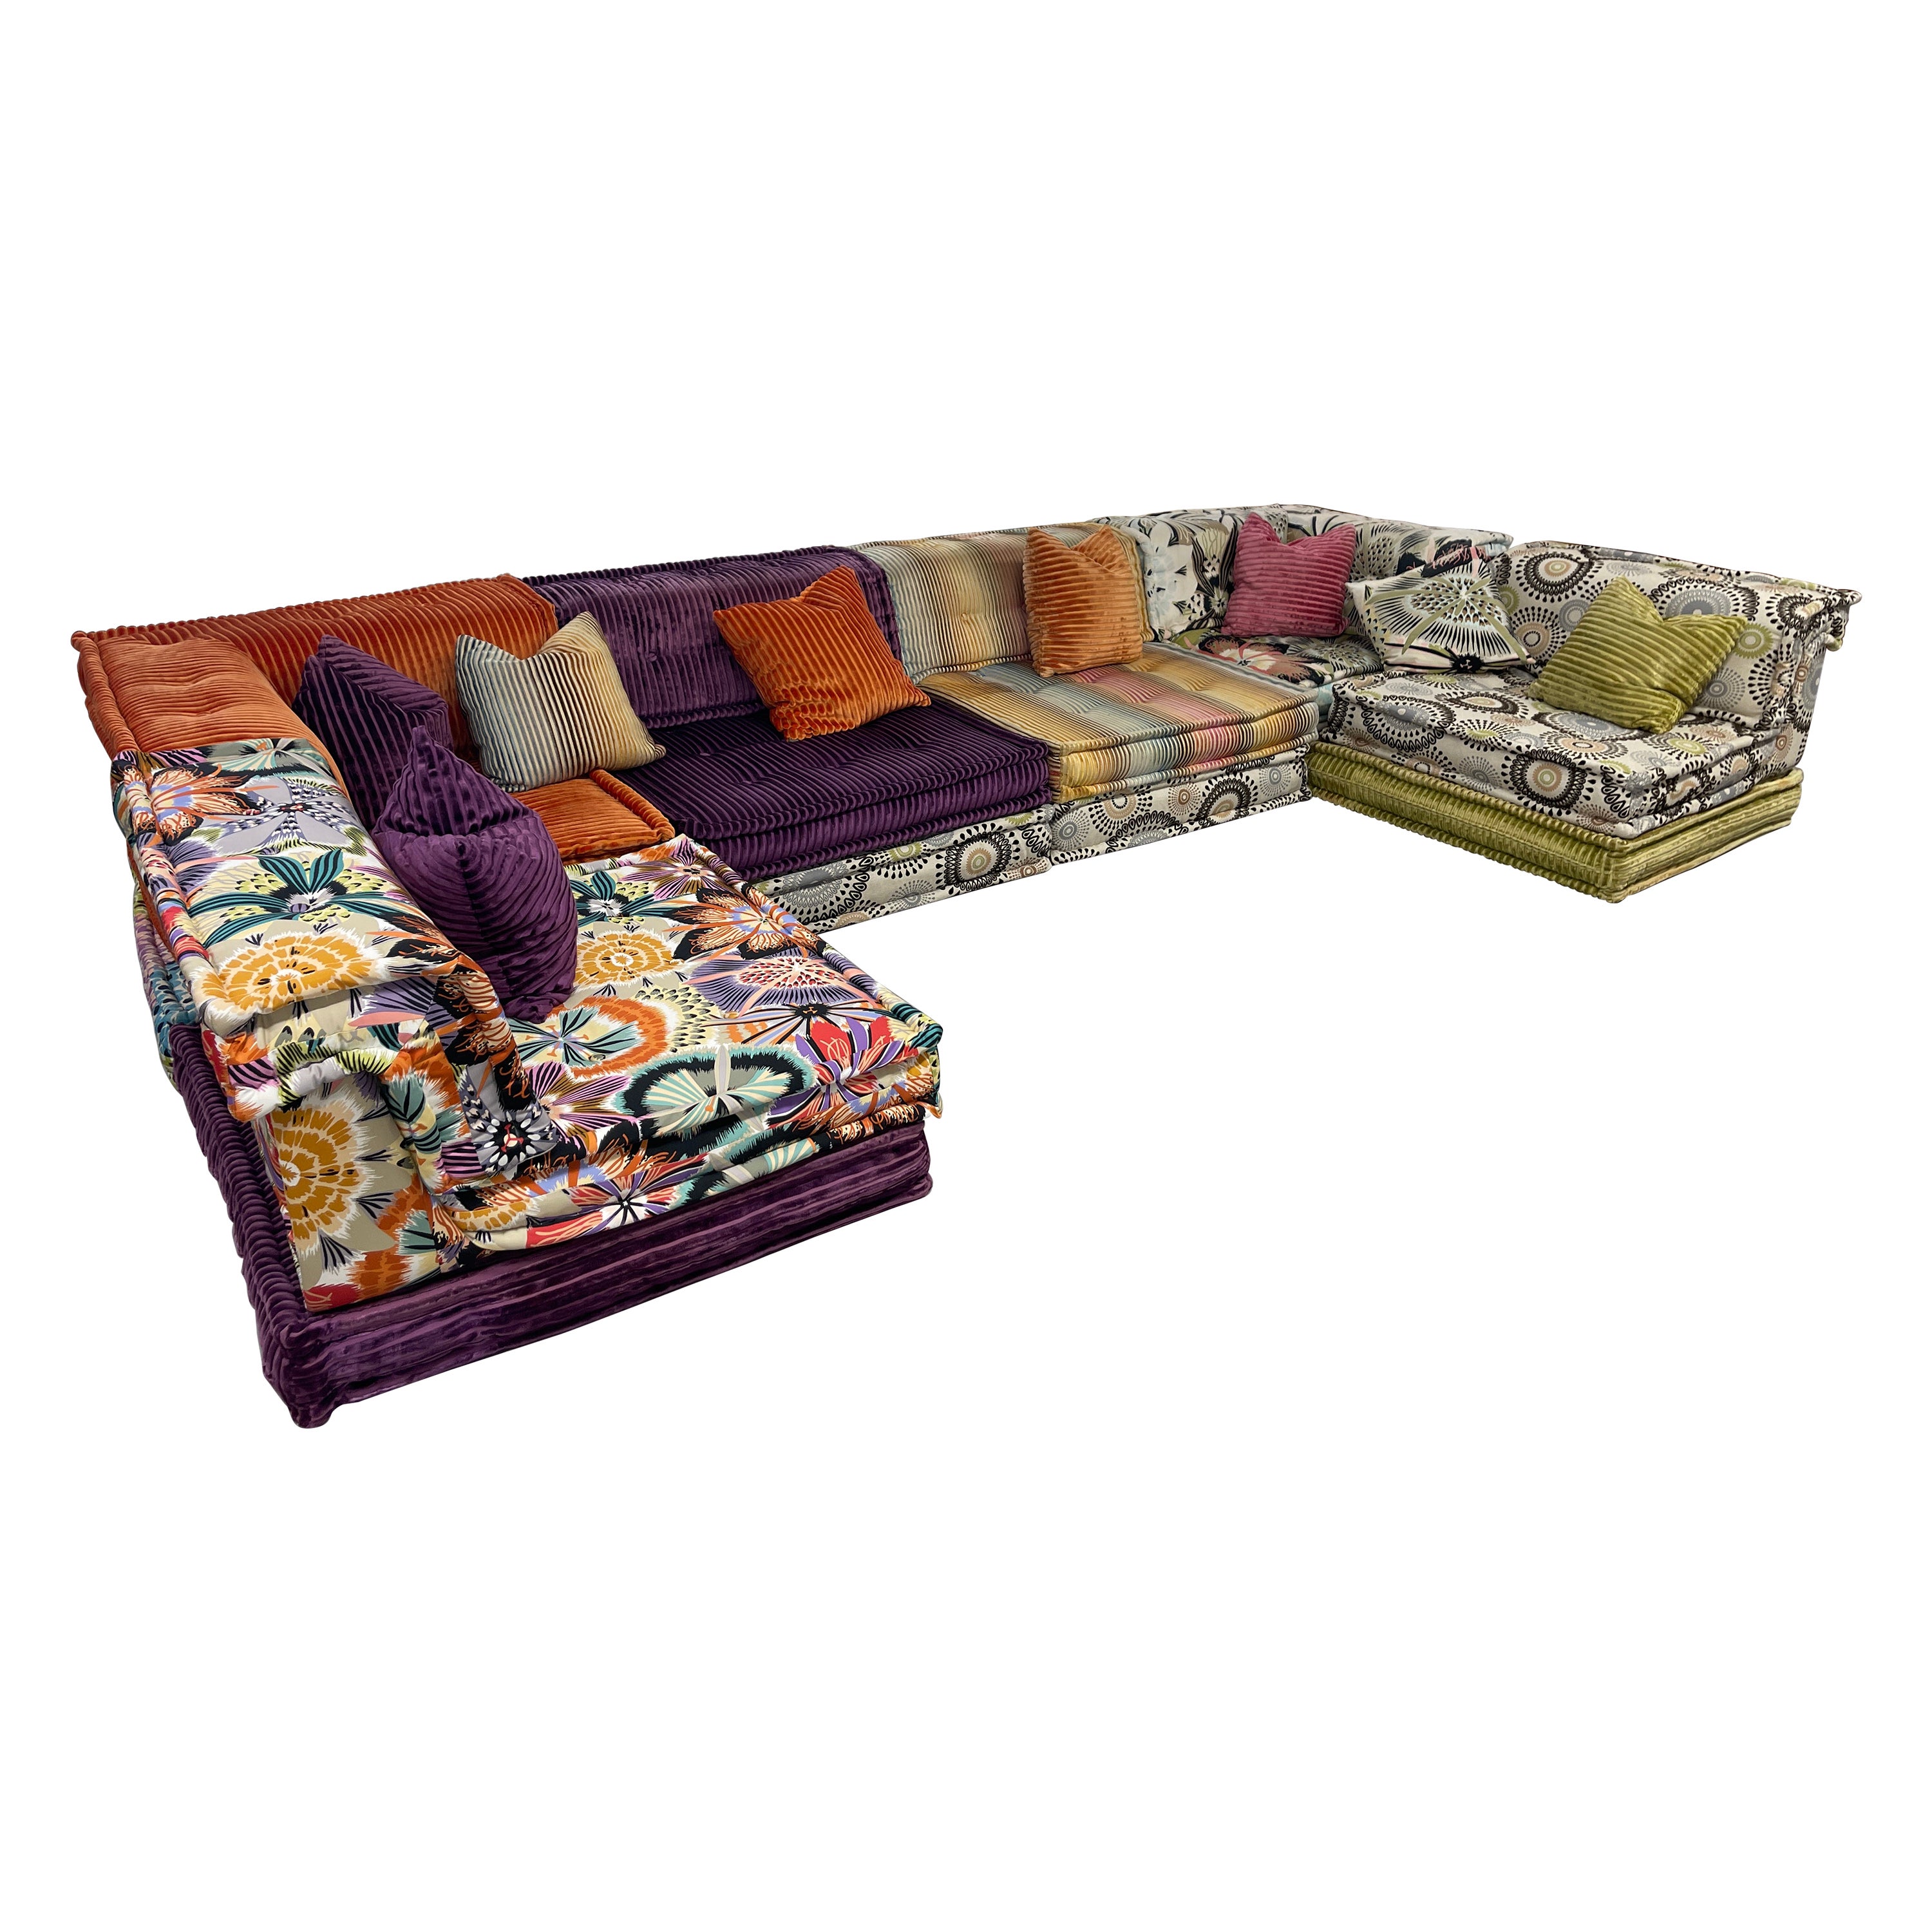 Roche Bobois Corner Sofa - 15 For Sale on 1stDibs